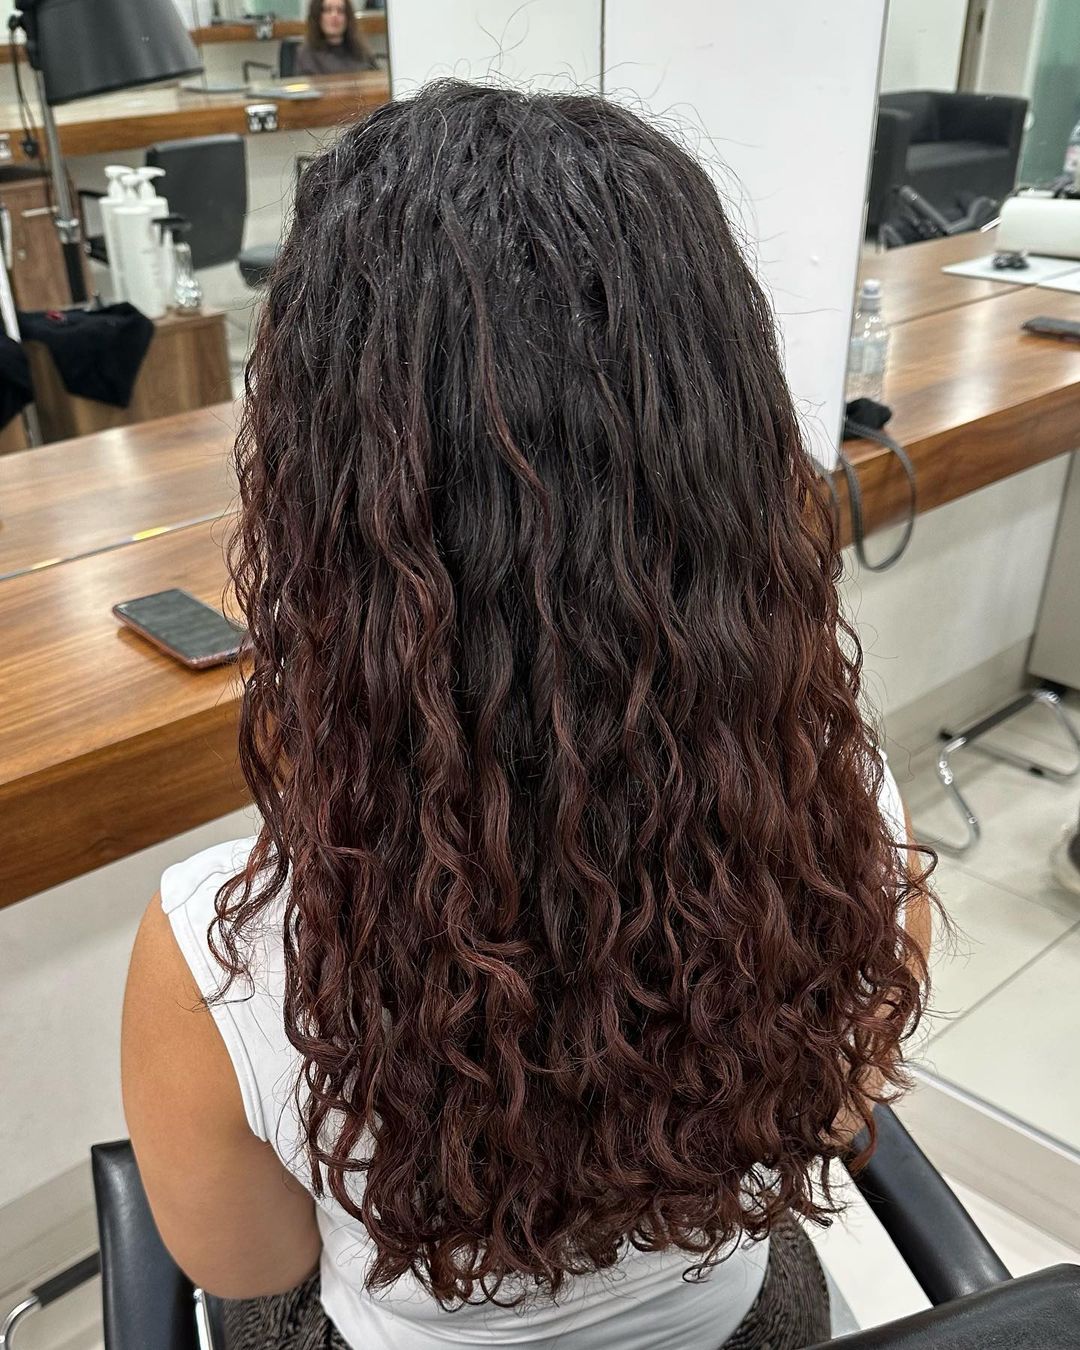 cheveux bruns naturels ondulés avec des reflets roux